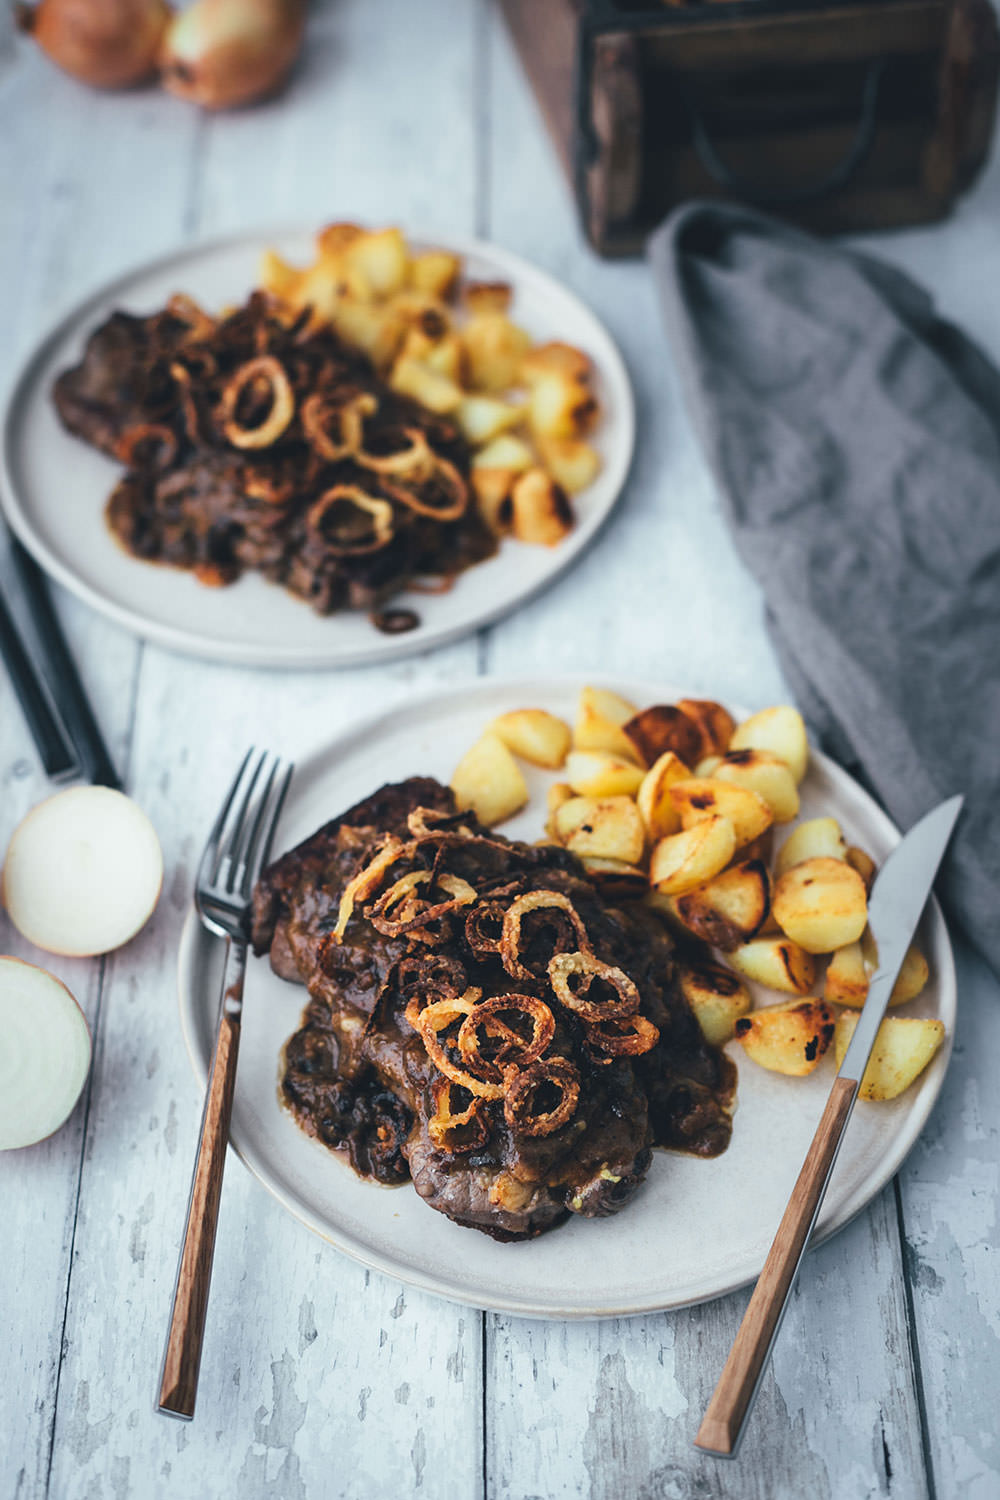 Rezept für Zwiebelrostbraten mit Bratkartoffeln | Roastbeef mit Röstzwiebeln und Zwiebelsauce und knusprigen Kartoffeln | moeyskitchen.com #rostbraten #zwiebelrostbraten #zwiebel #zwiebeln #steak #roastbeef #rumpsteak #bratkartoffeln #rezept #foodblog